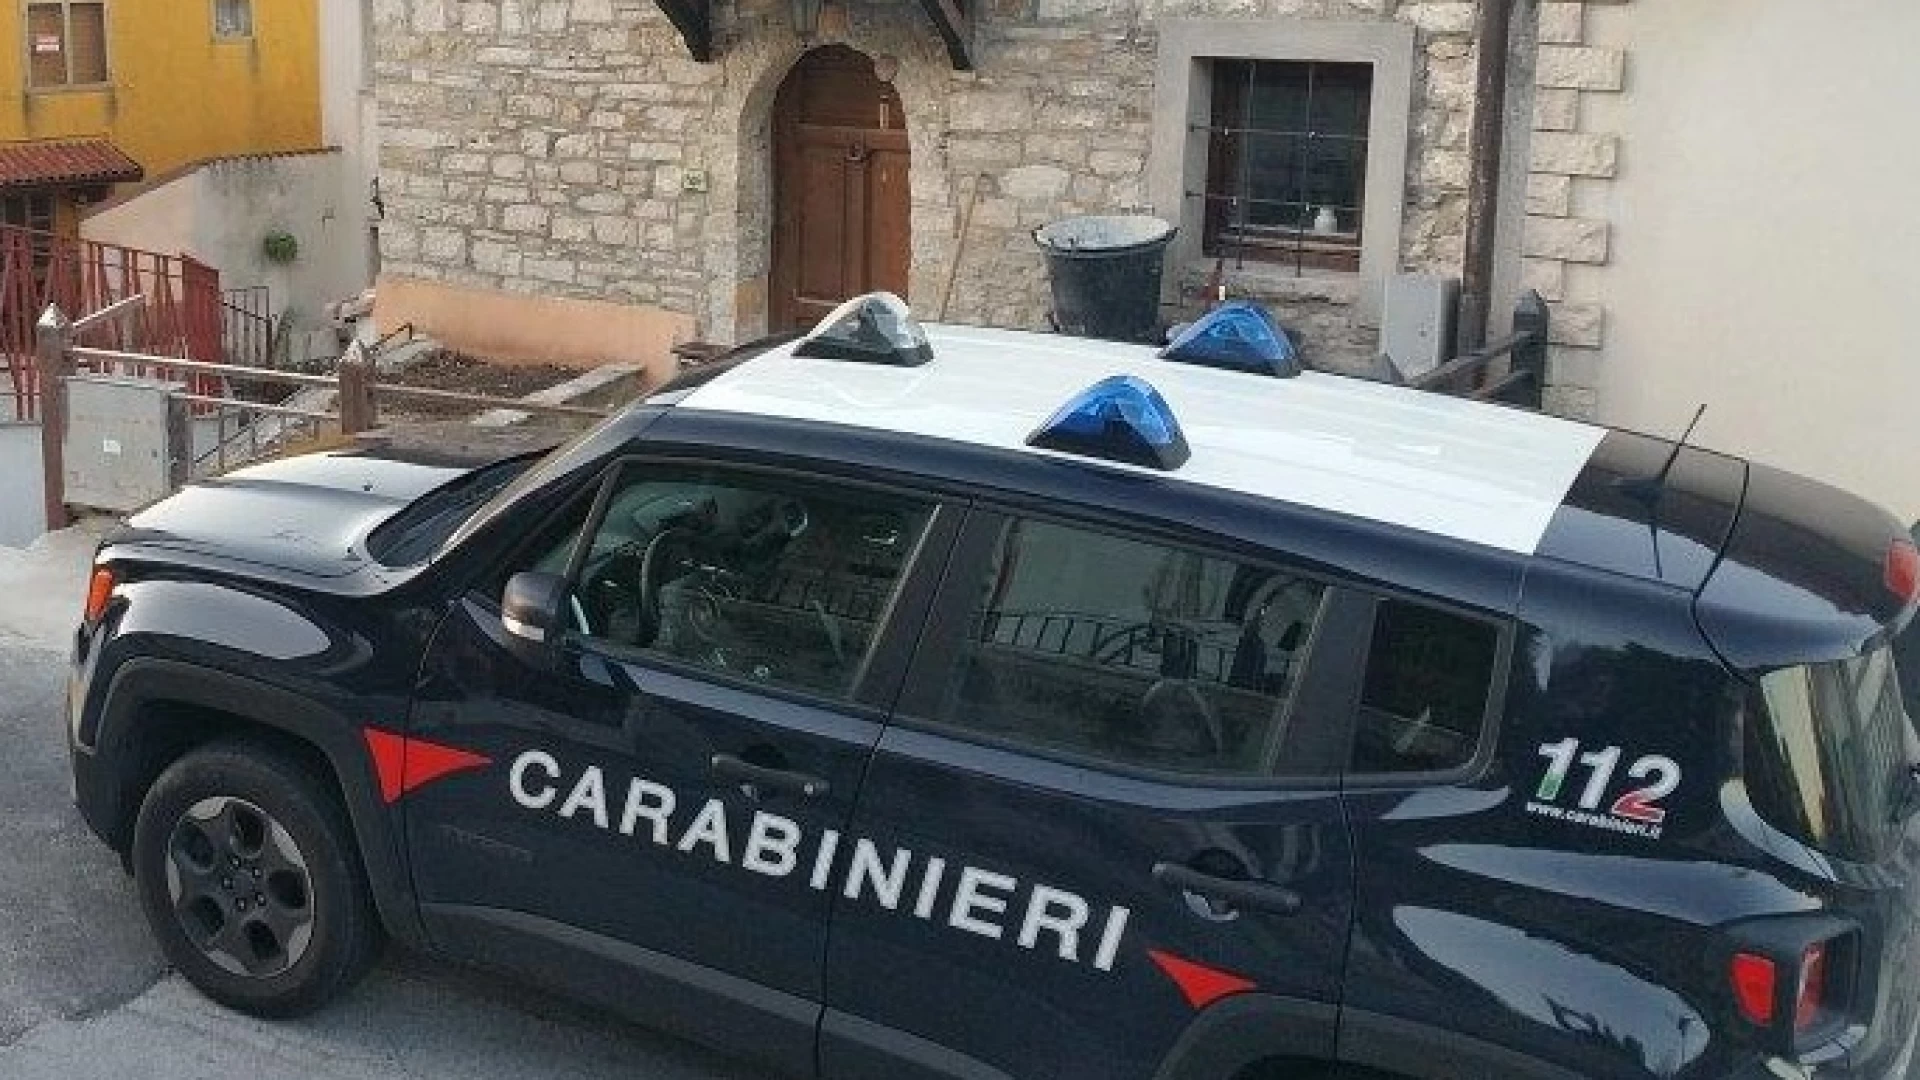 Rionero Sannitico: i Carabinieri soccorrono automobilista in preda ad un malore e lo conducono in ospedale a Castel Di Sangro. Intervento salvavita.